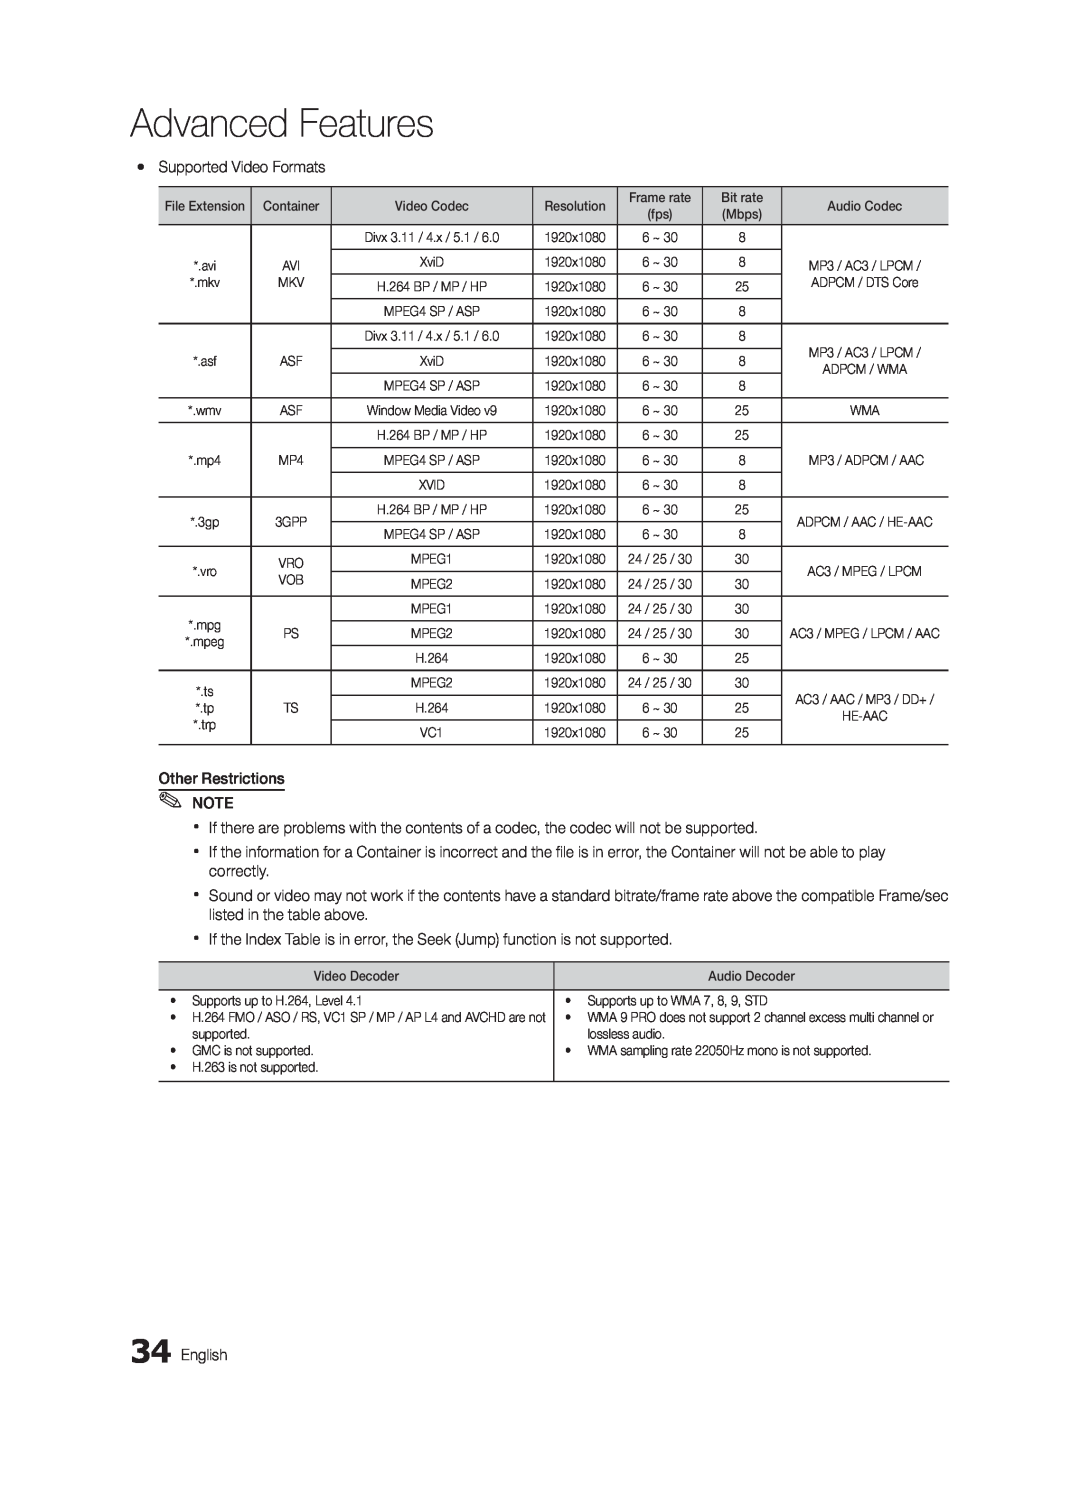 Samsung UE46C5800QKXXU, UE37C5700QSXZG, UE32C5700QSXZG, UE40C5700QSXZG manual Advanced Features, yy Supported Video Formats 